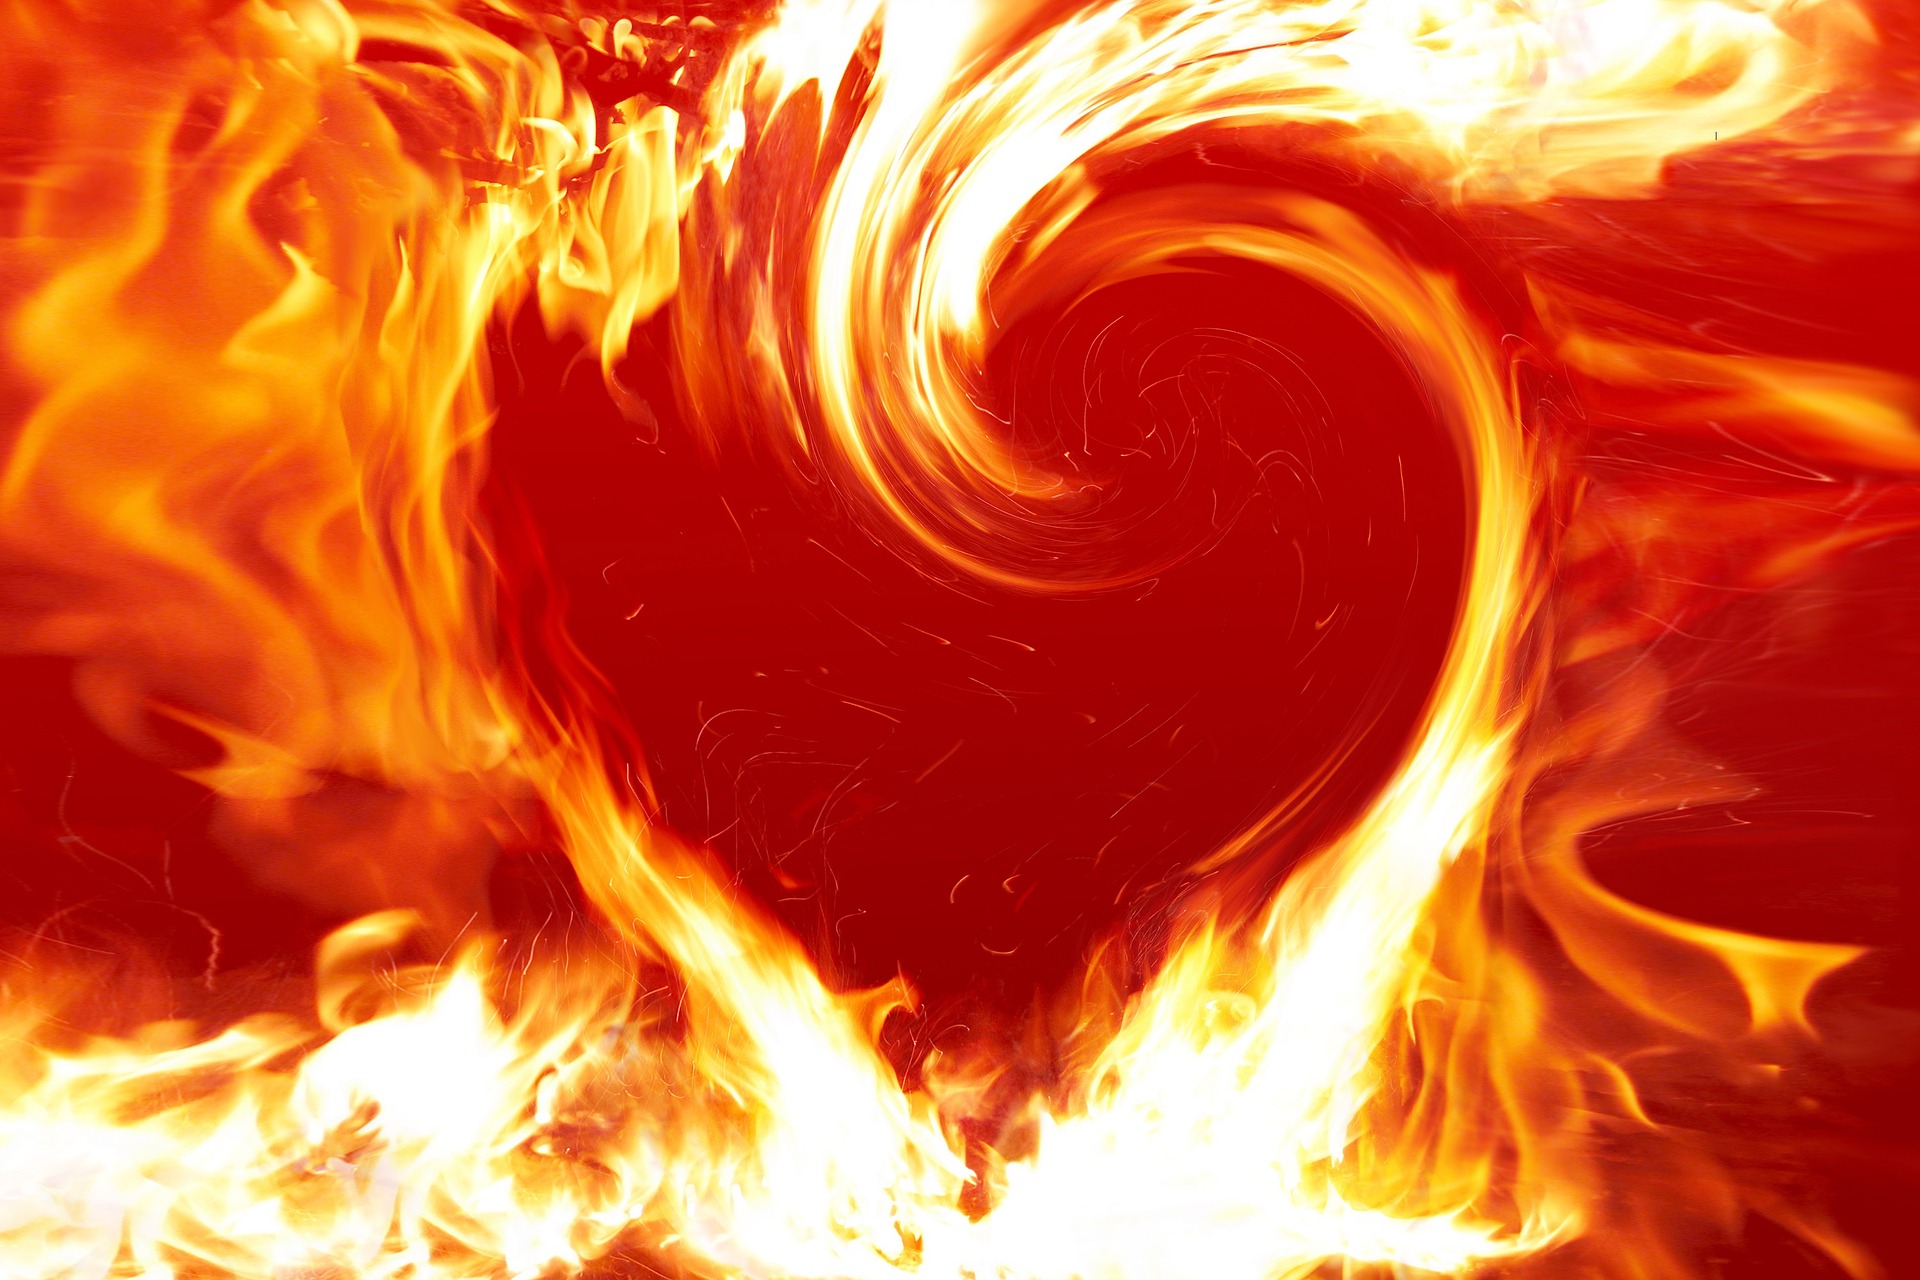 fuego en forma de corazón en llamas en lenguaje figurado.